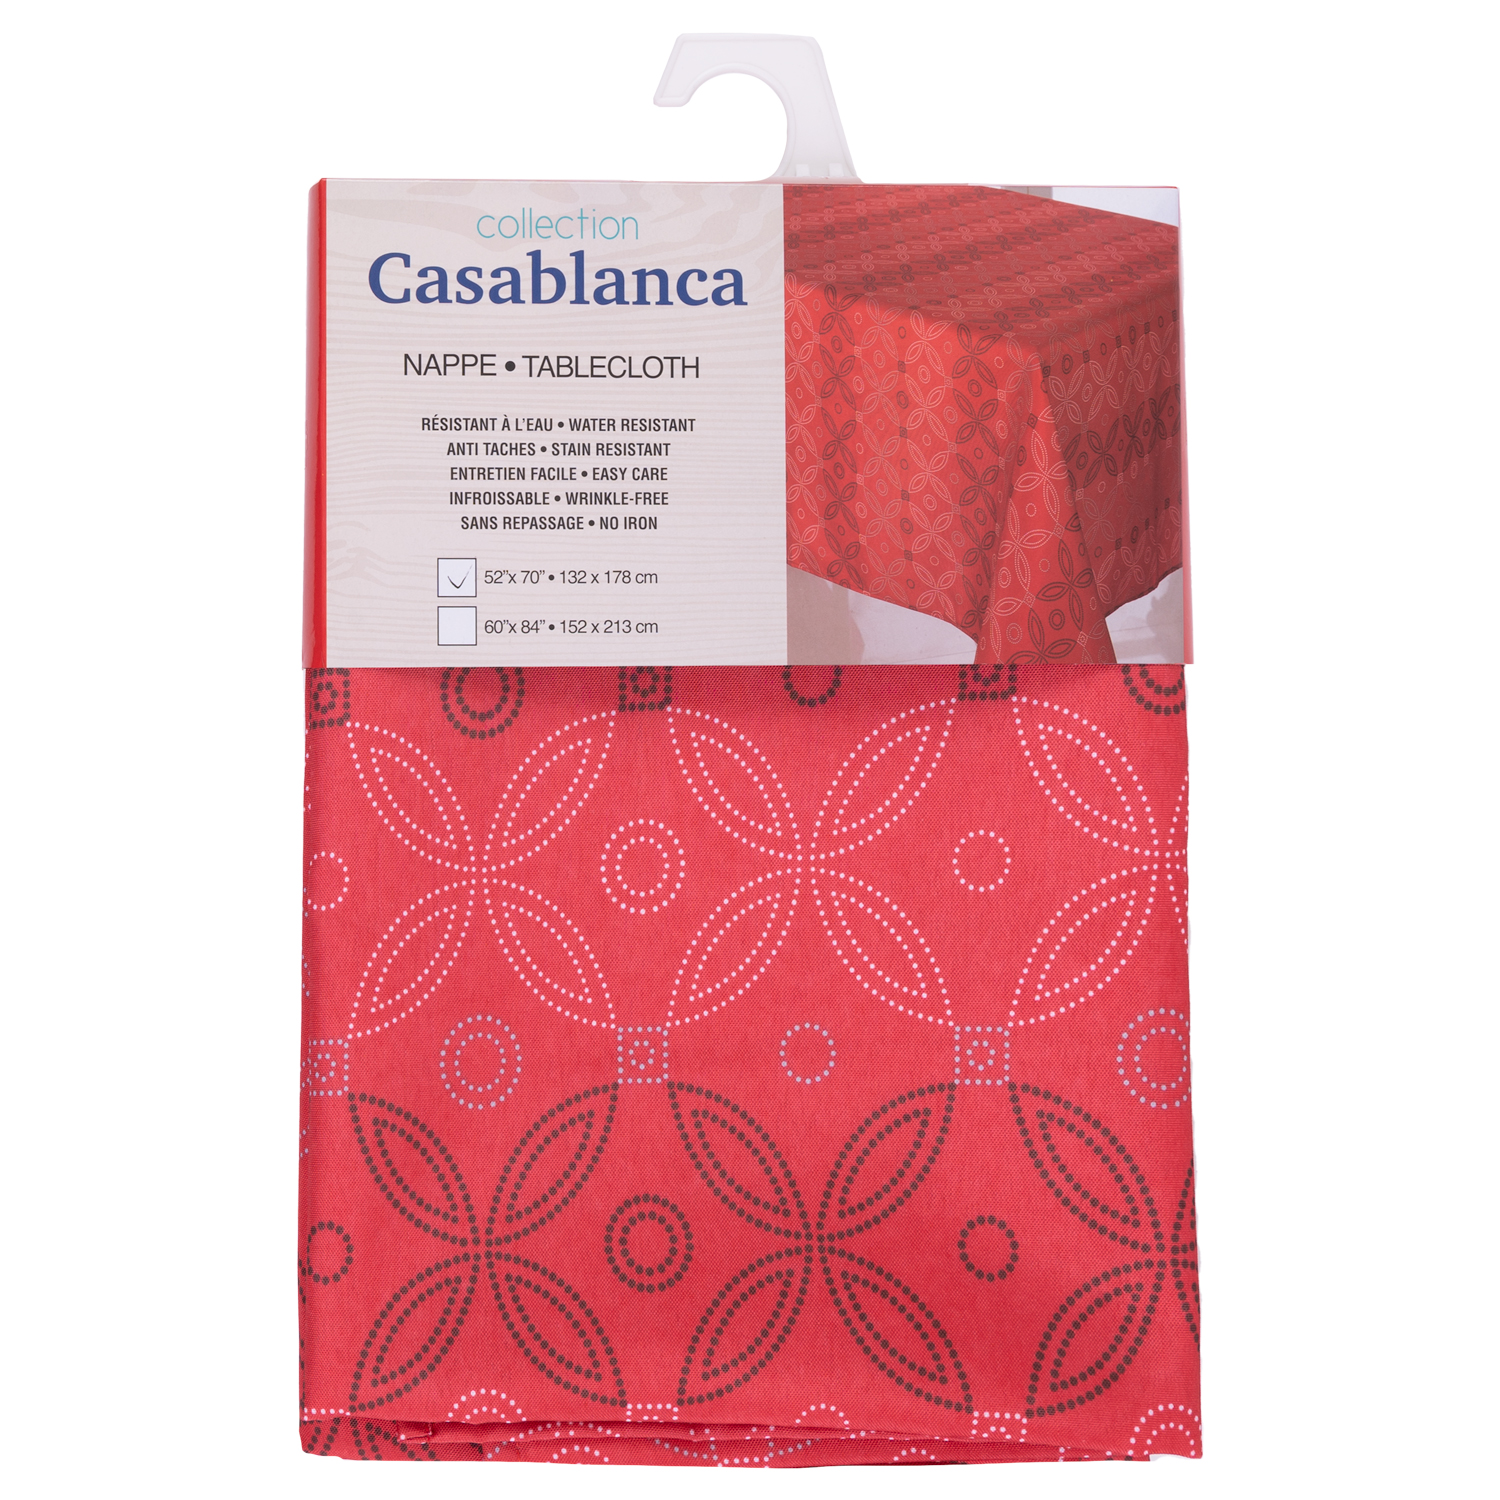 Collection CASABLANCA - Nappe en tissu, 52"x70" - Fleurs à pois rouges